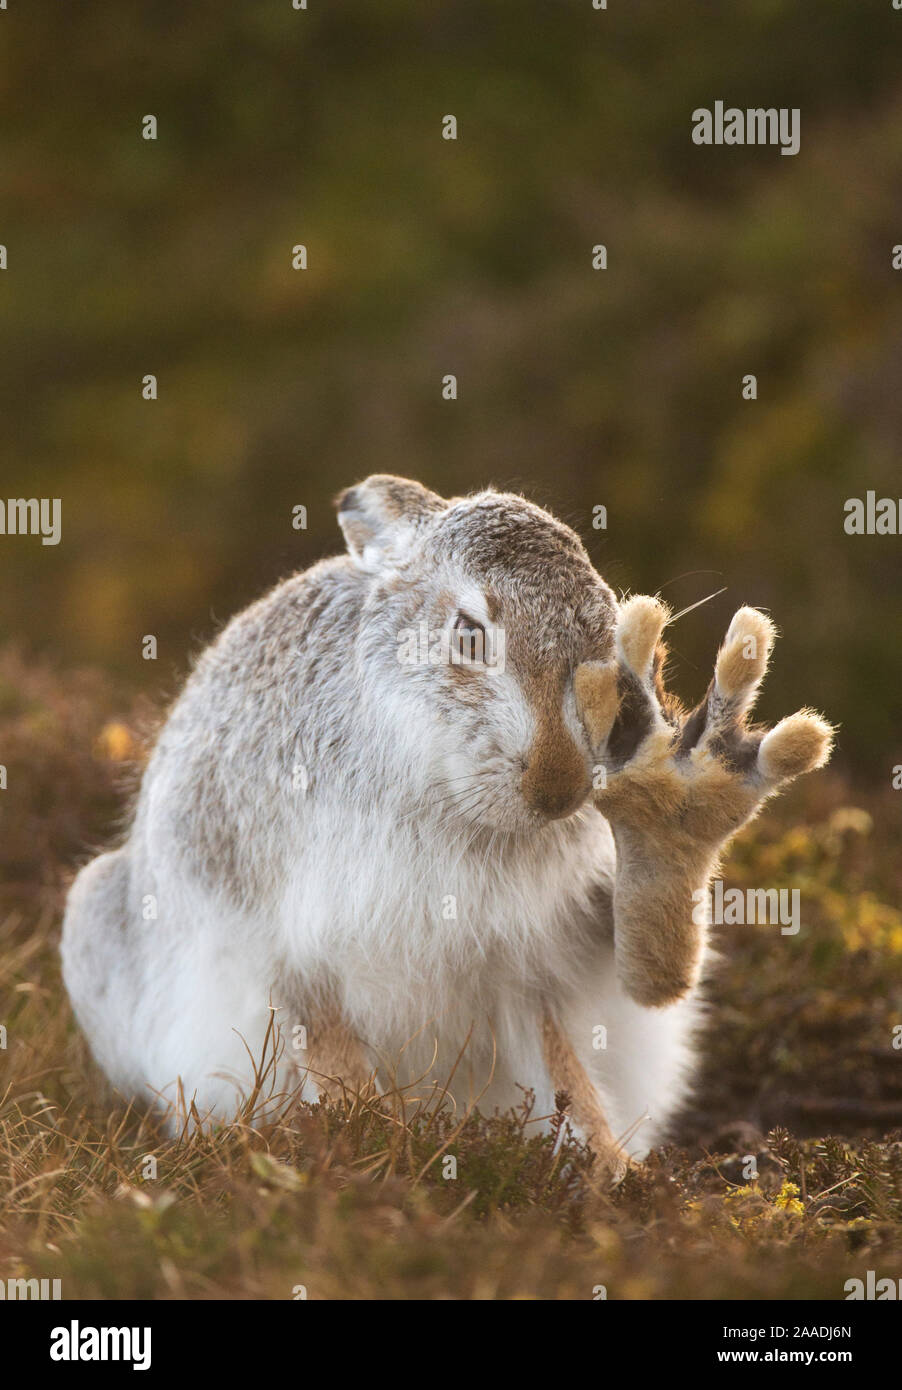 Schneehase (Lepus timidus) selbst pflegen, mit dem hinteren Fuß angehoben, Cairngorms National Park, Schottland, Großbritannien, Februar. Hoch gelobt, in der tierischen Verhalten Kategorie der britischen Wildlife Photography Awards (Bwpa)-Wettbewerb 2017. Stockfoto